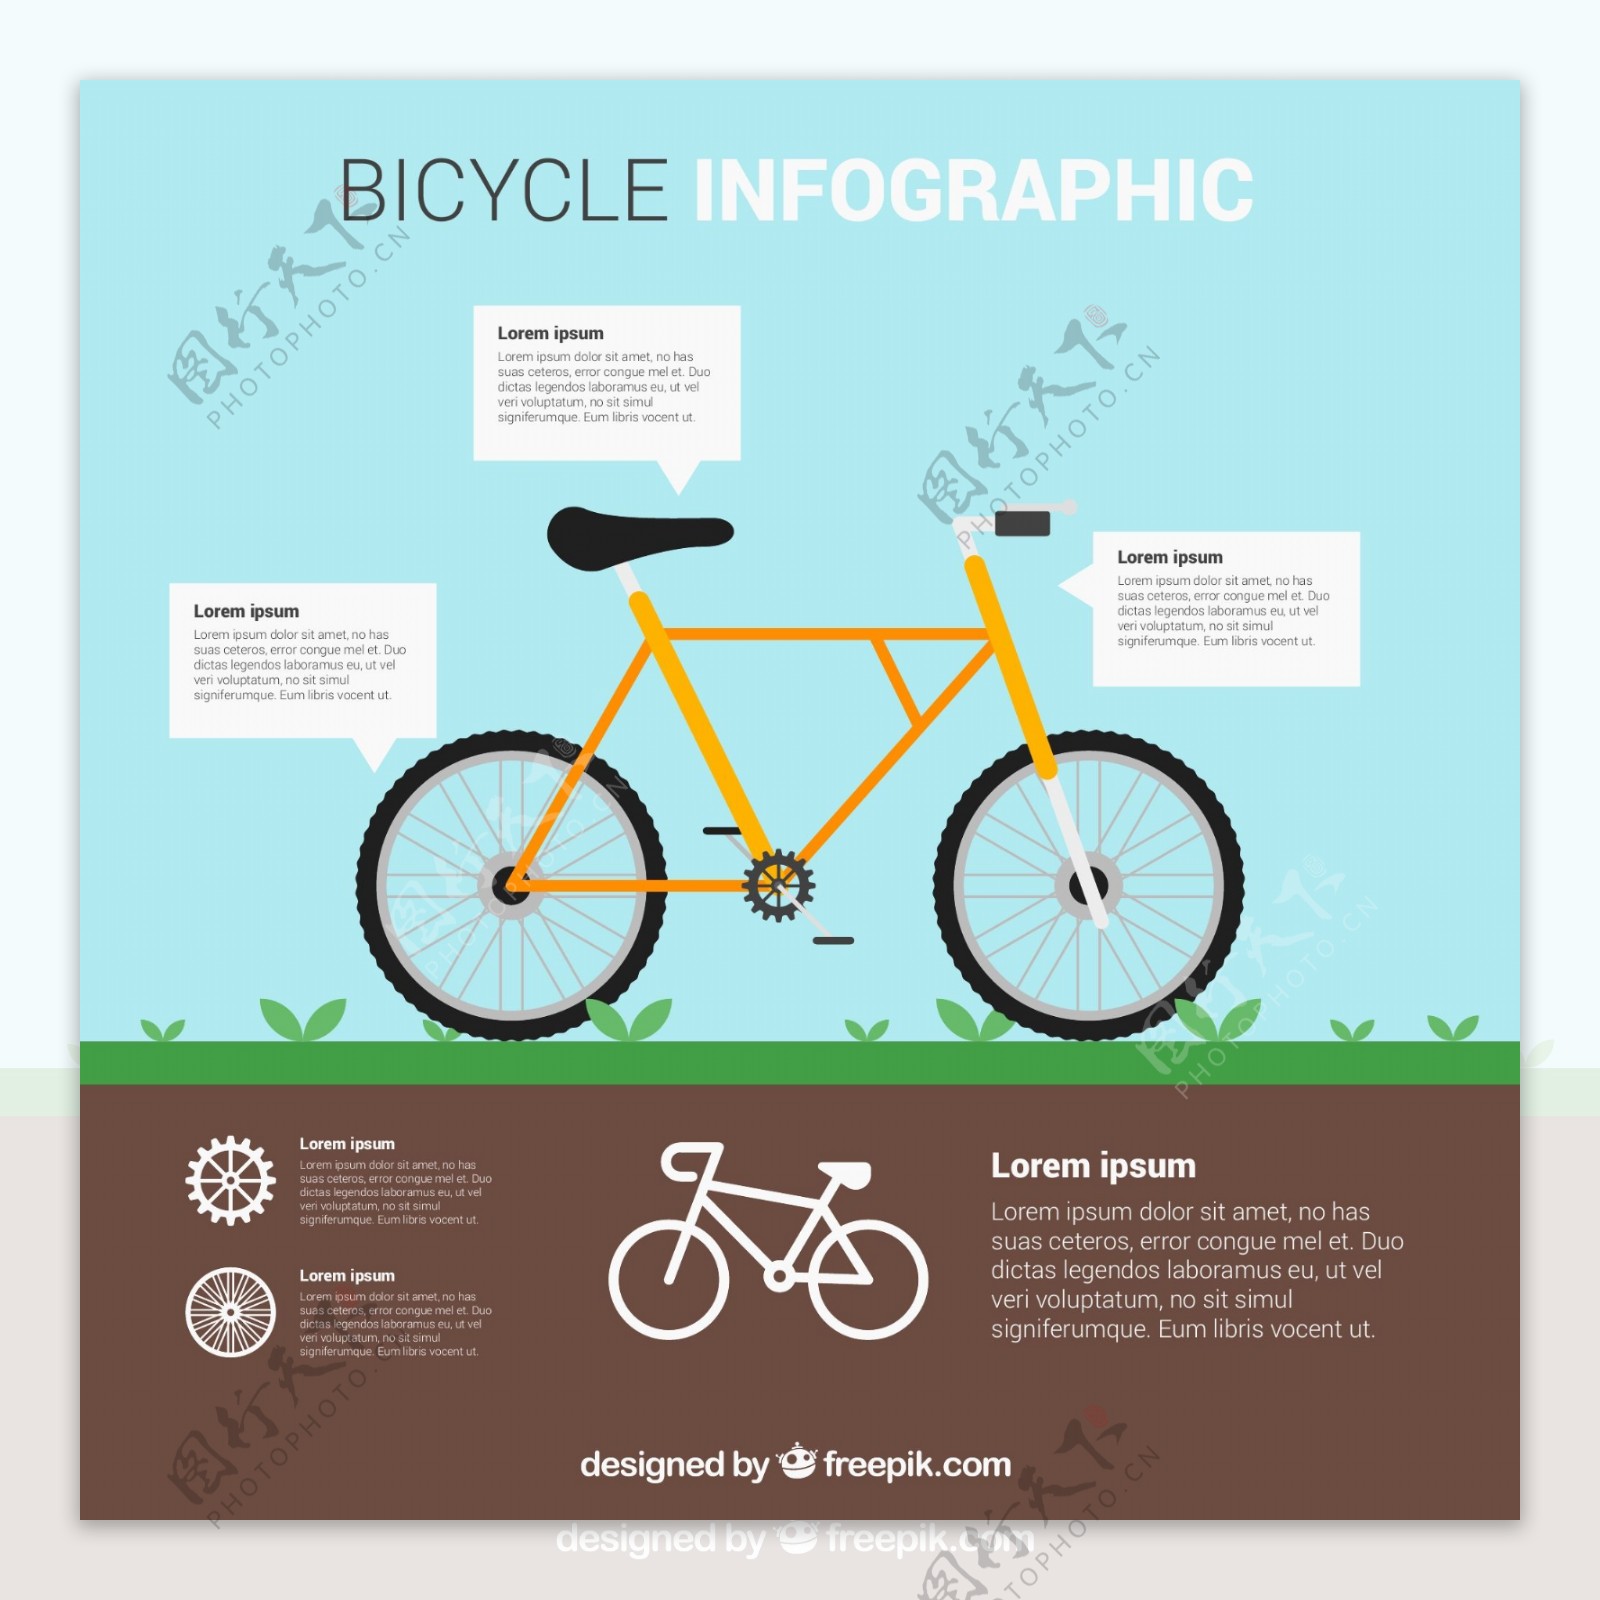 自行车信息介绍分布图